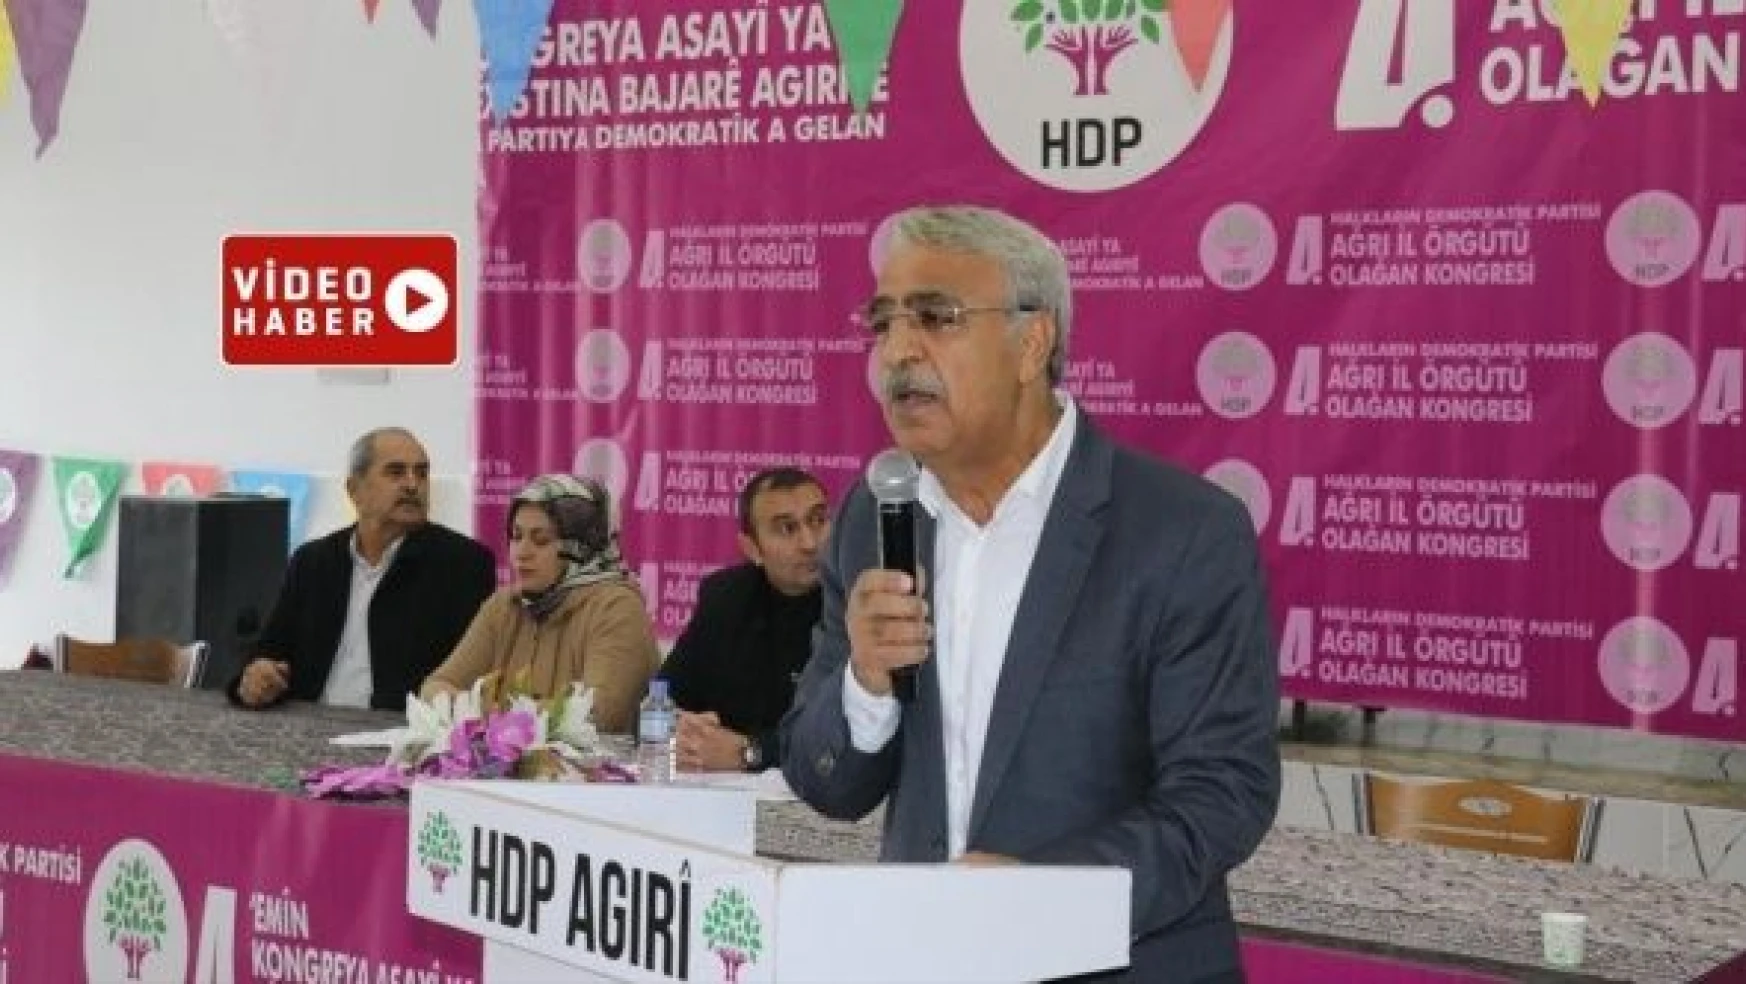 HDP'li Mithat Sancar: 'Beyoğlu'ndaki saldırıyı vahşet olarak niteliyoruz'